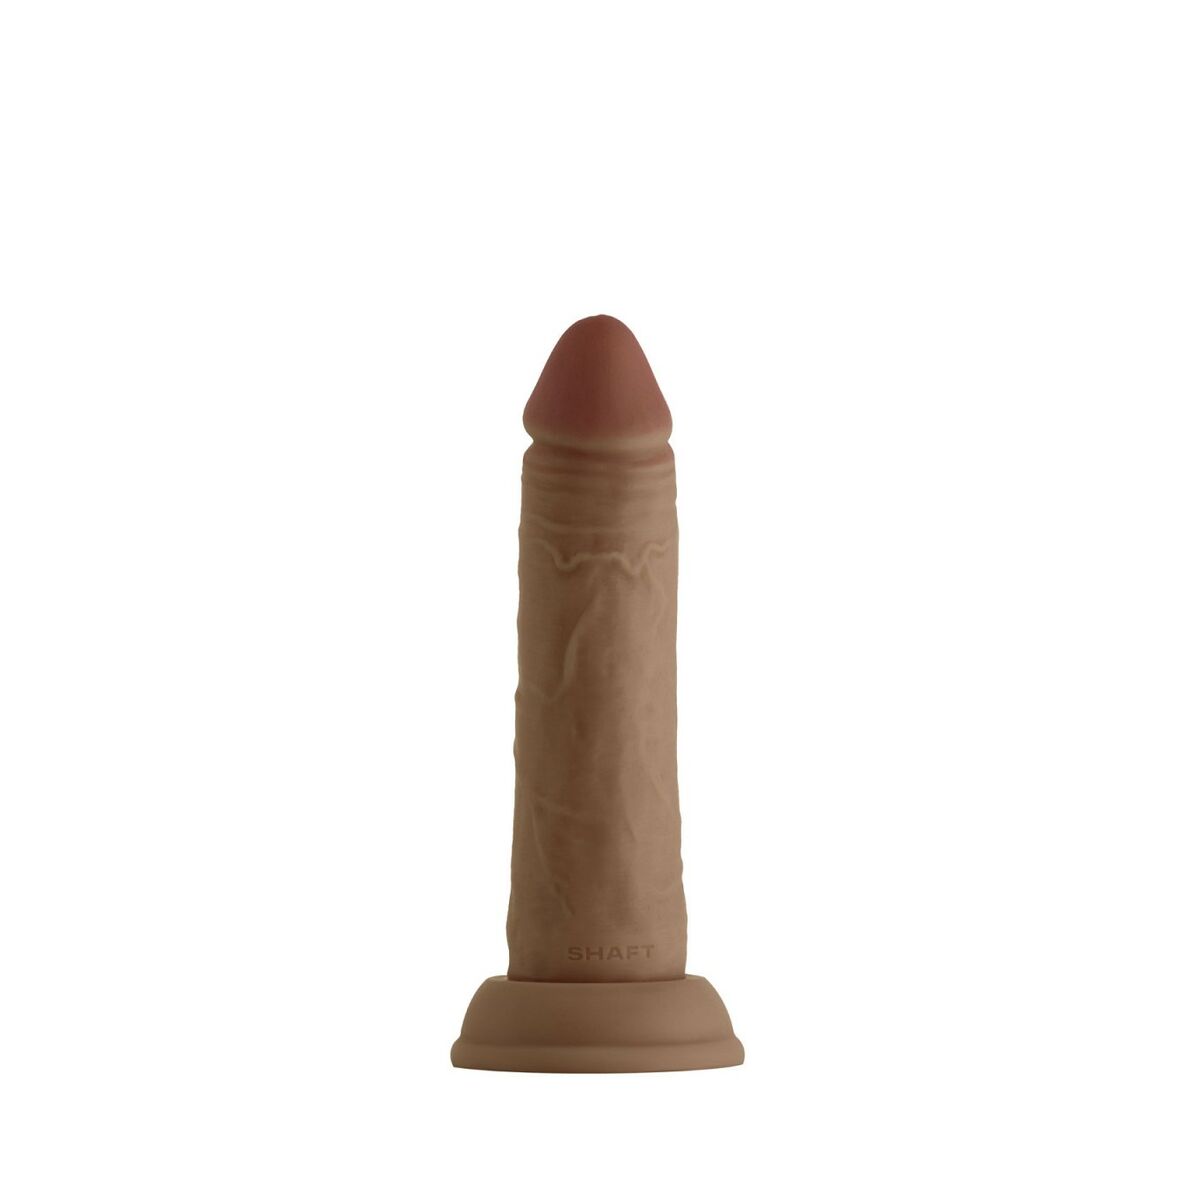 Osta tuote Realistinen dildo Shaft DONG – OAK verkkokaupastamme Korhone: Seksikauppa & Erotiikka 10% alennuksella koodilla KORHONE